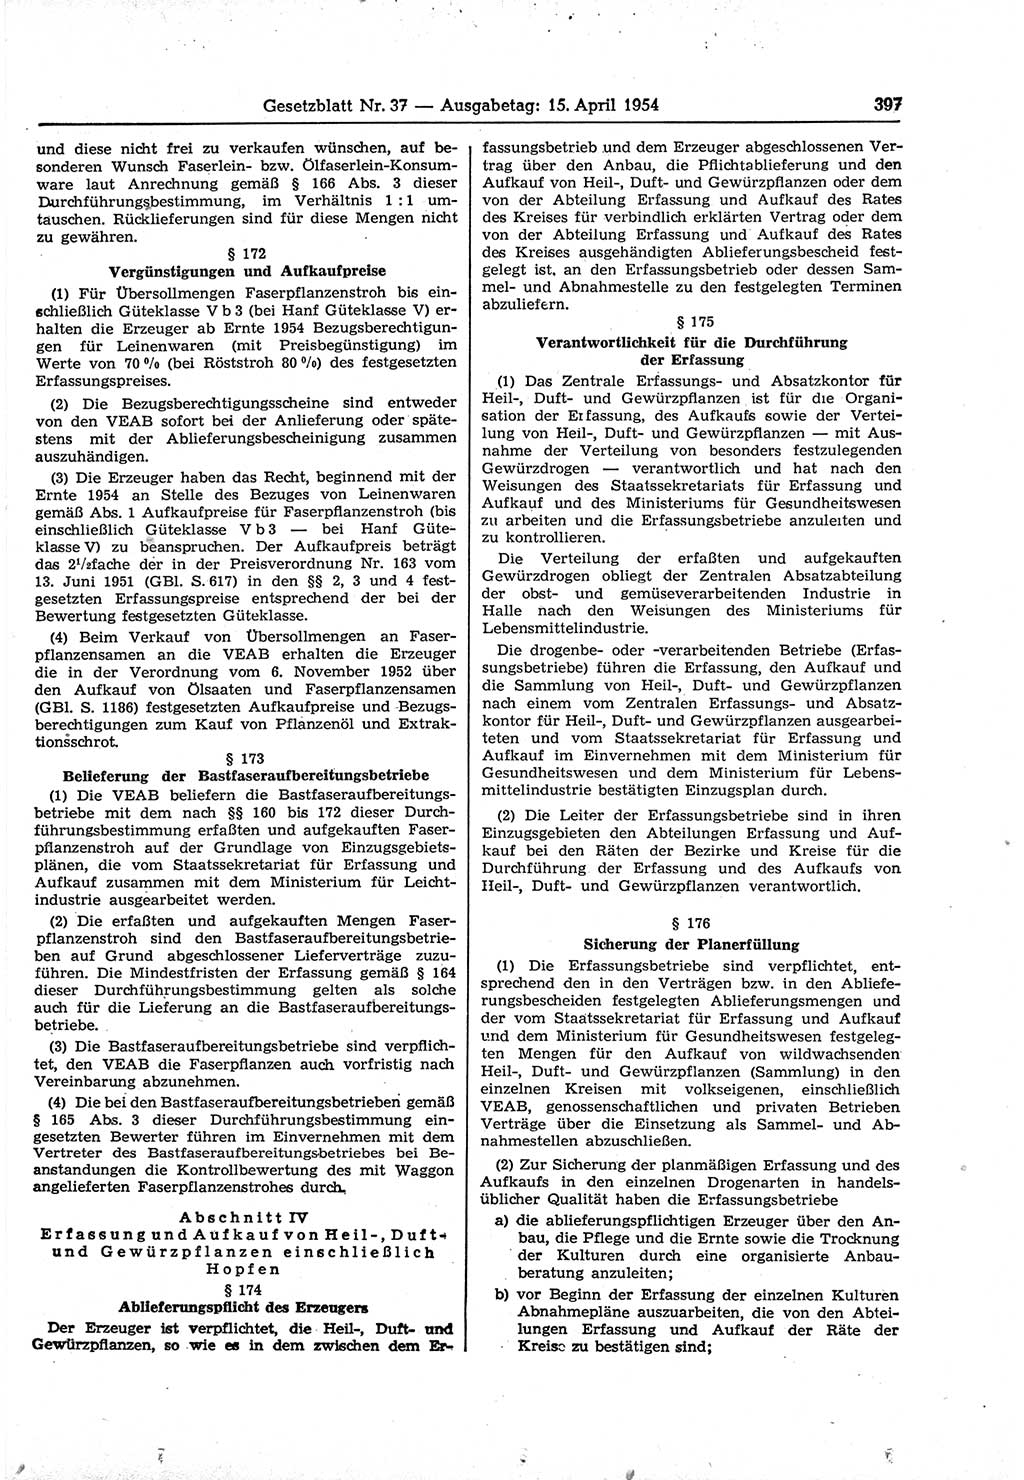 Gesetzblatt (GBl.) der Deutschen Demokratischen Republik (DDR) 1954, Seite 397 (GBl. DDR 1954, S. 397)